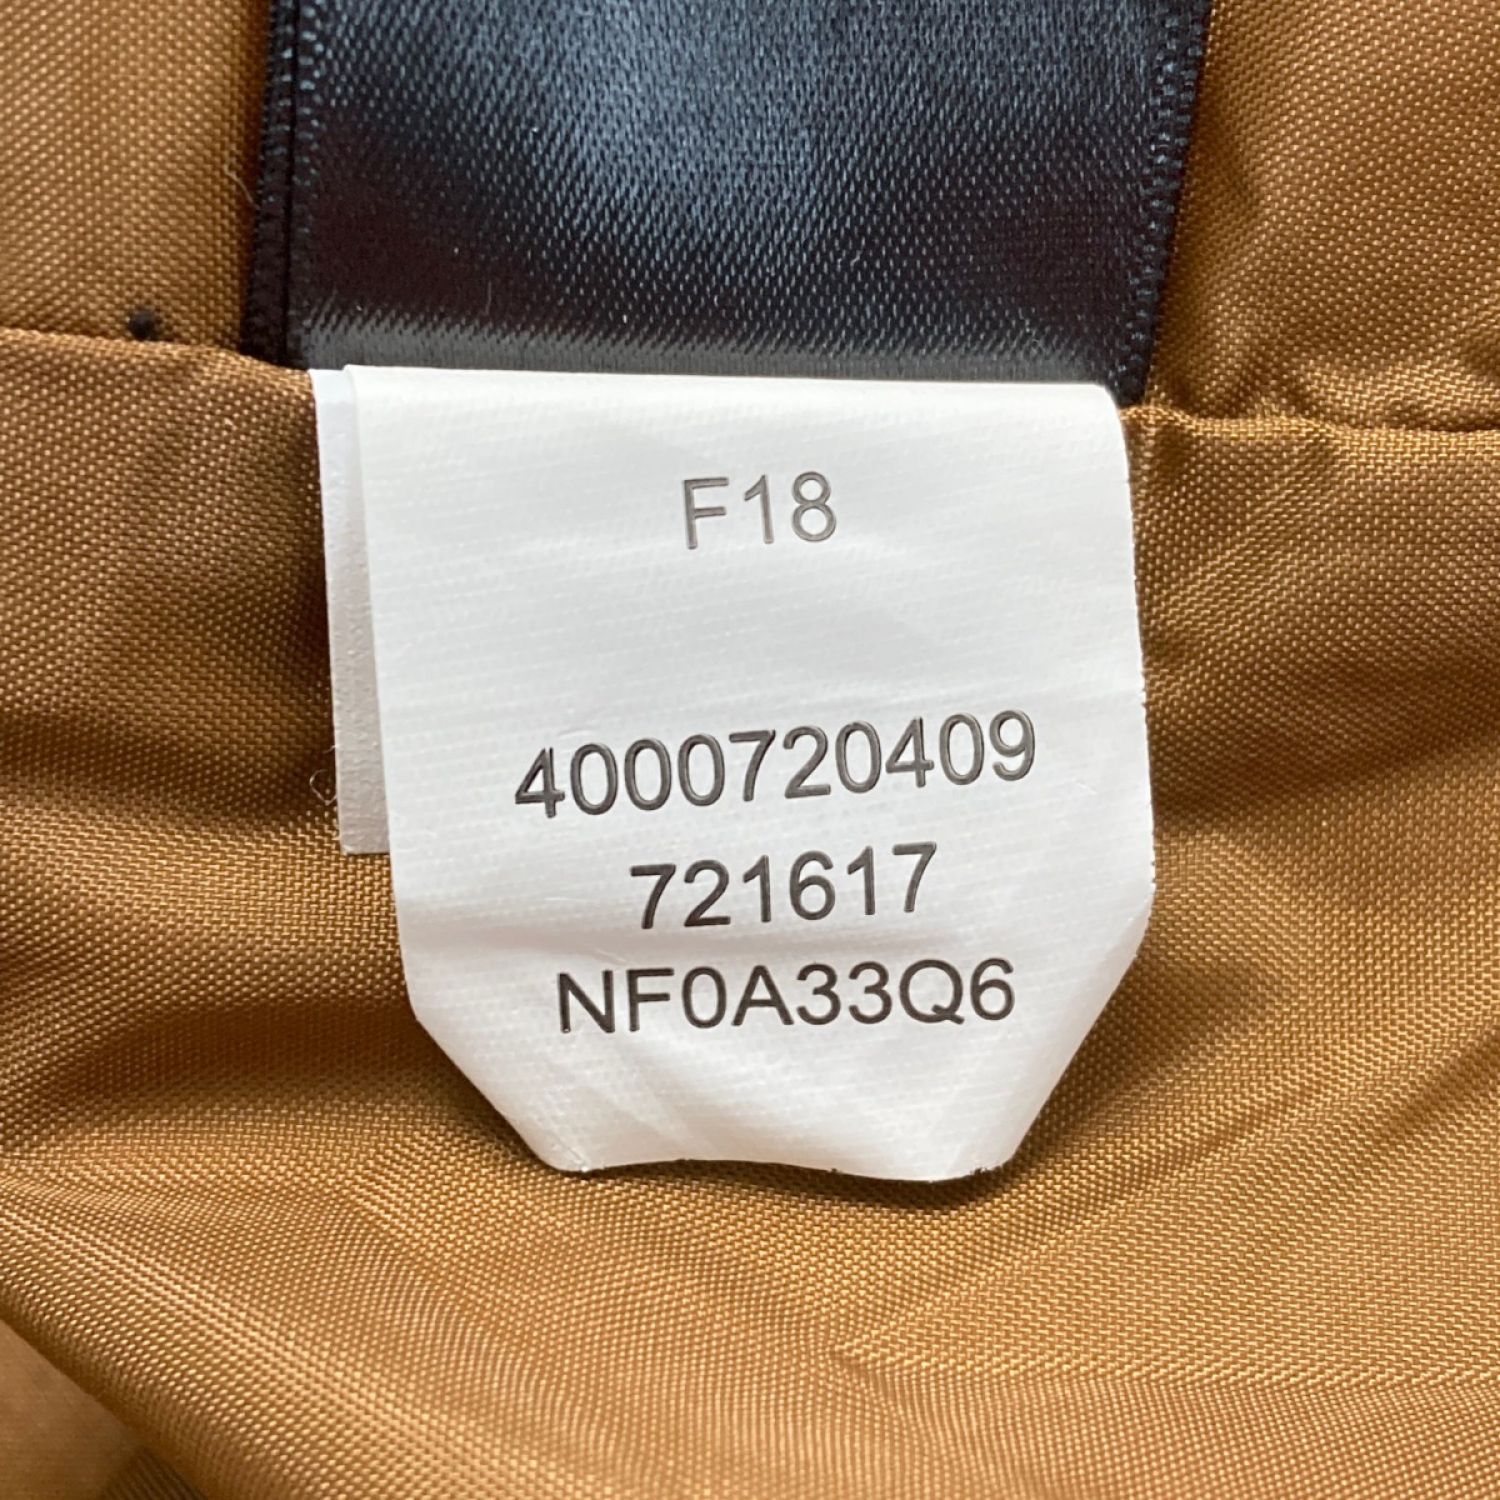 【中古】 THE NORTH FACE ザノースフェイス ミラートン ジャケット サイズ L メンズ NF0A33Q6 グレー×ブラック B